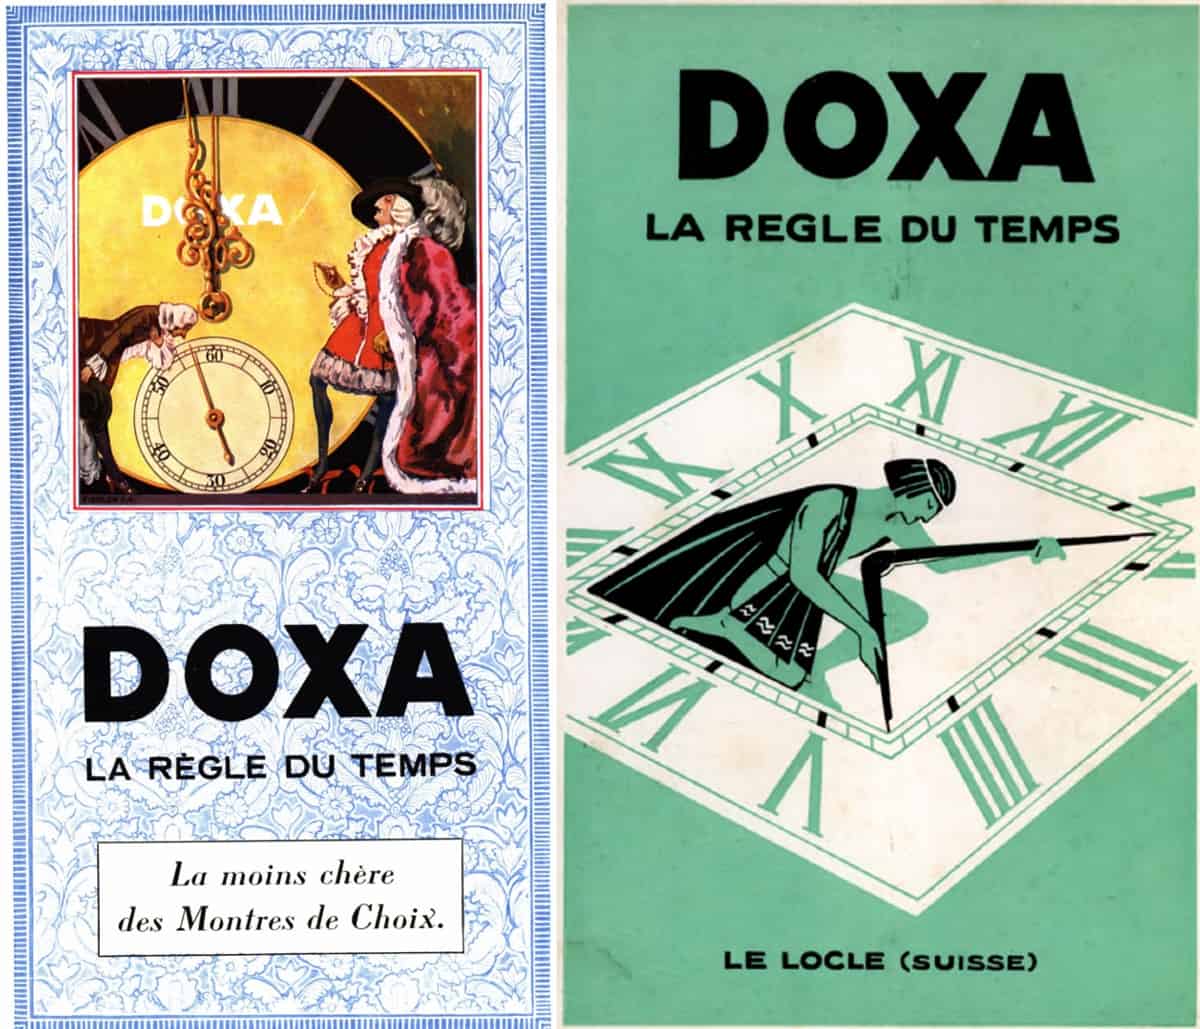 Alte Anzeigen für Doxa Armbanduhren der Jahre 1928 und 1930